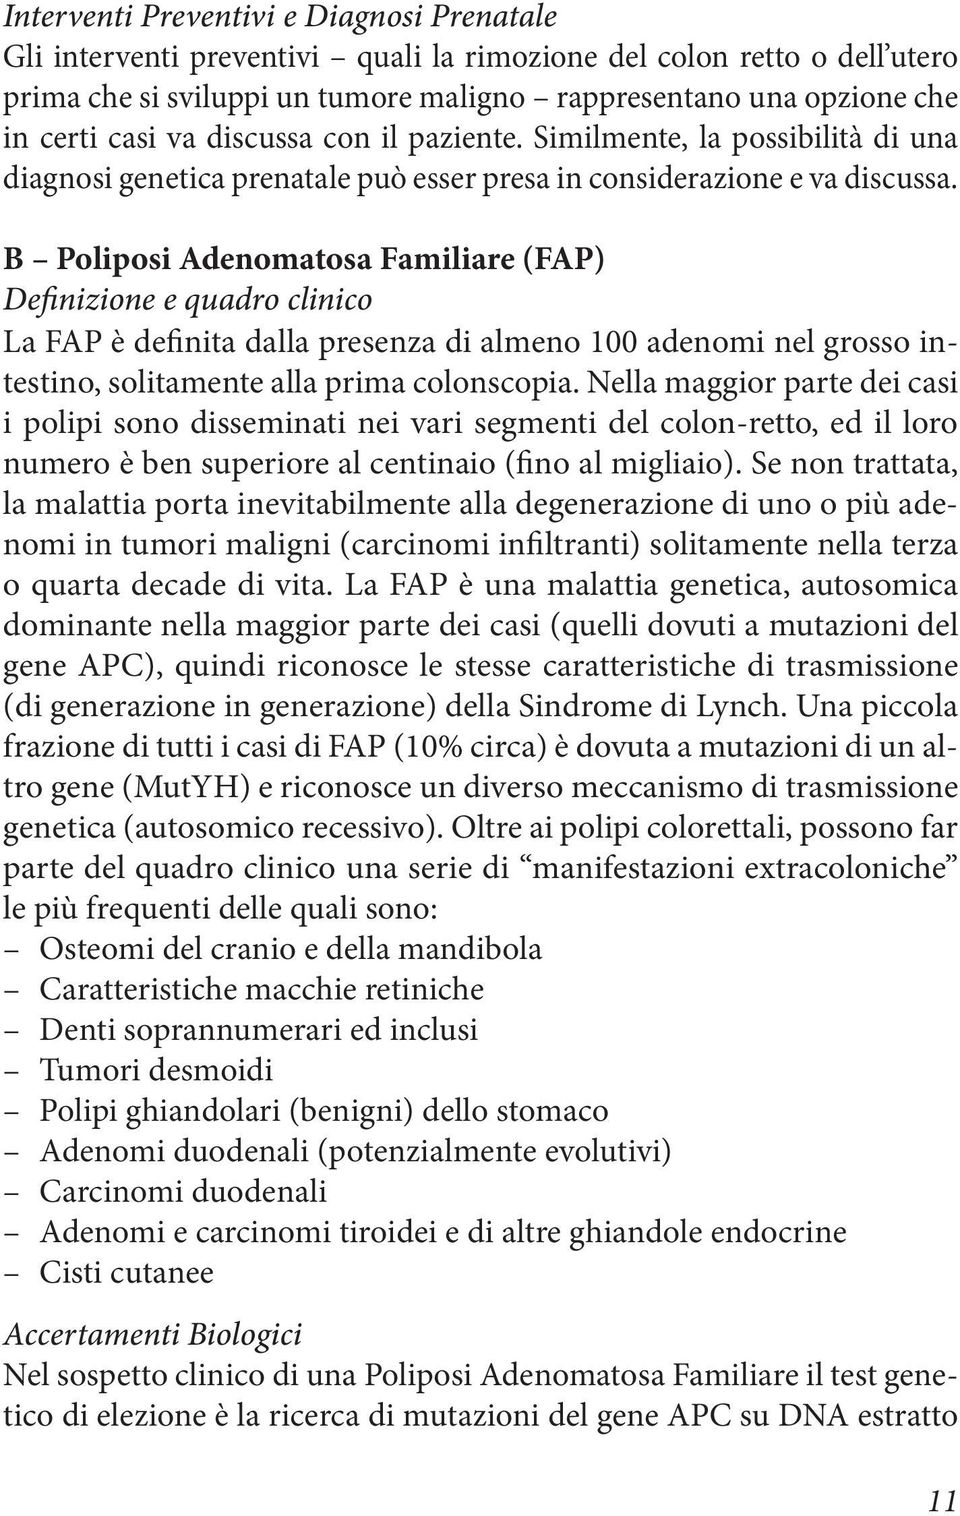 B Poliposi Adenomatosa Familiare (FAP) Definizione e quadro clinico La FAP è definita dalla presenza di almeno 100 adenomi nel grosso intestino, solitamente alla prima colonscopia.